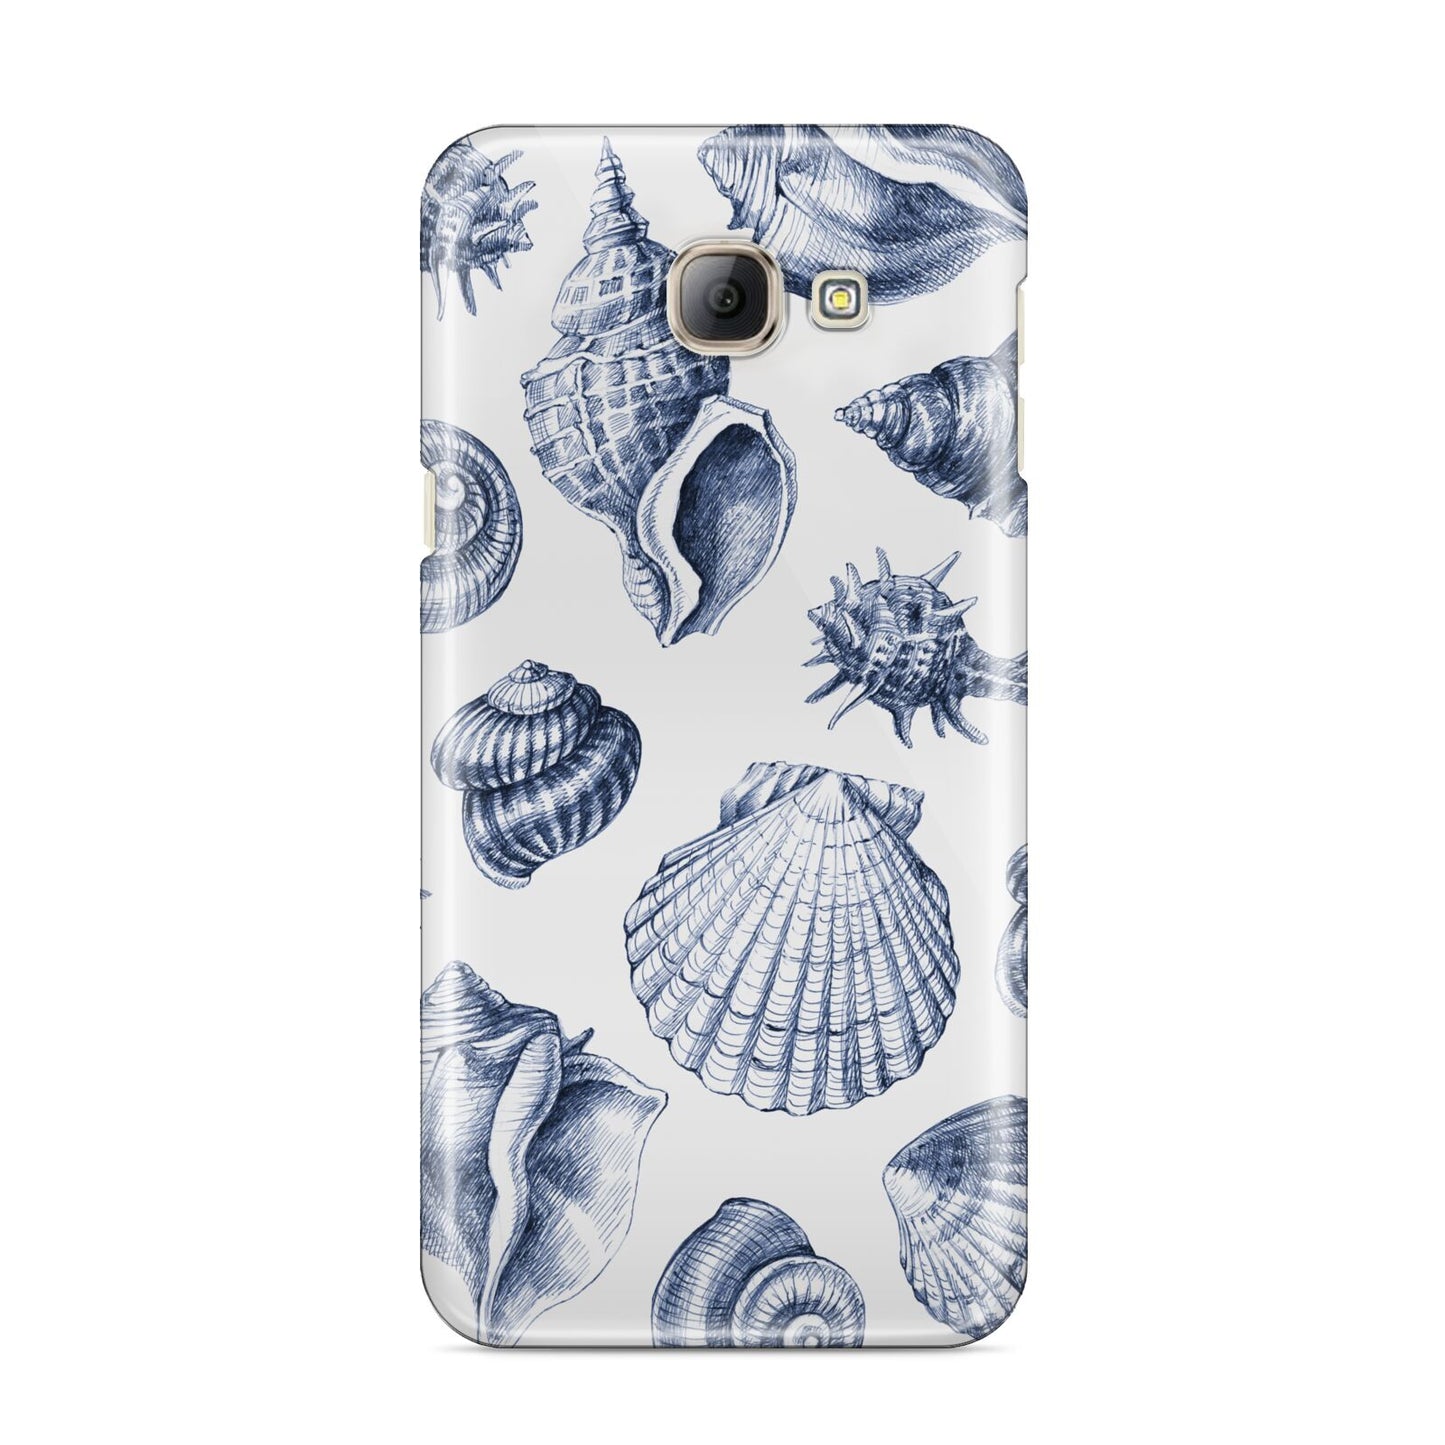 Shell Samsung Galaxy A8 2016 Case